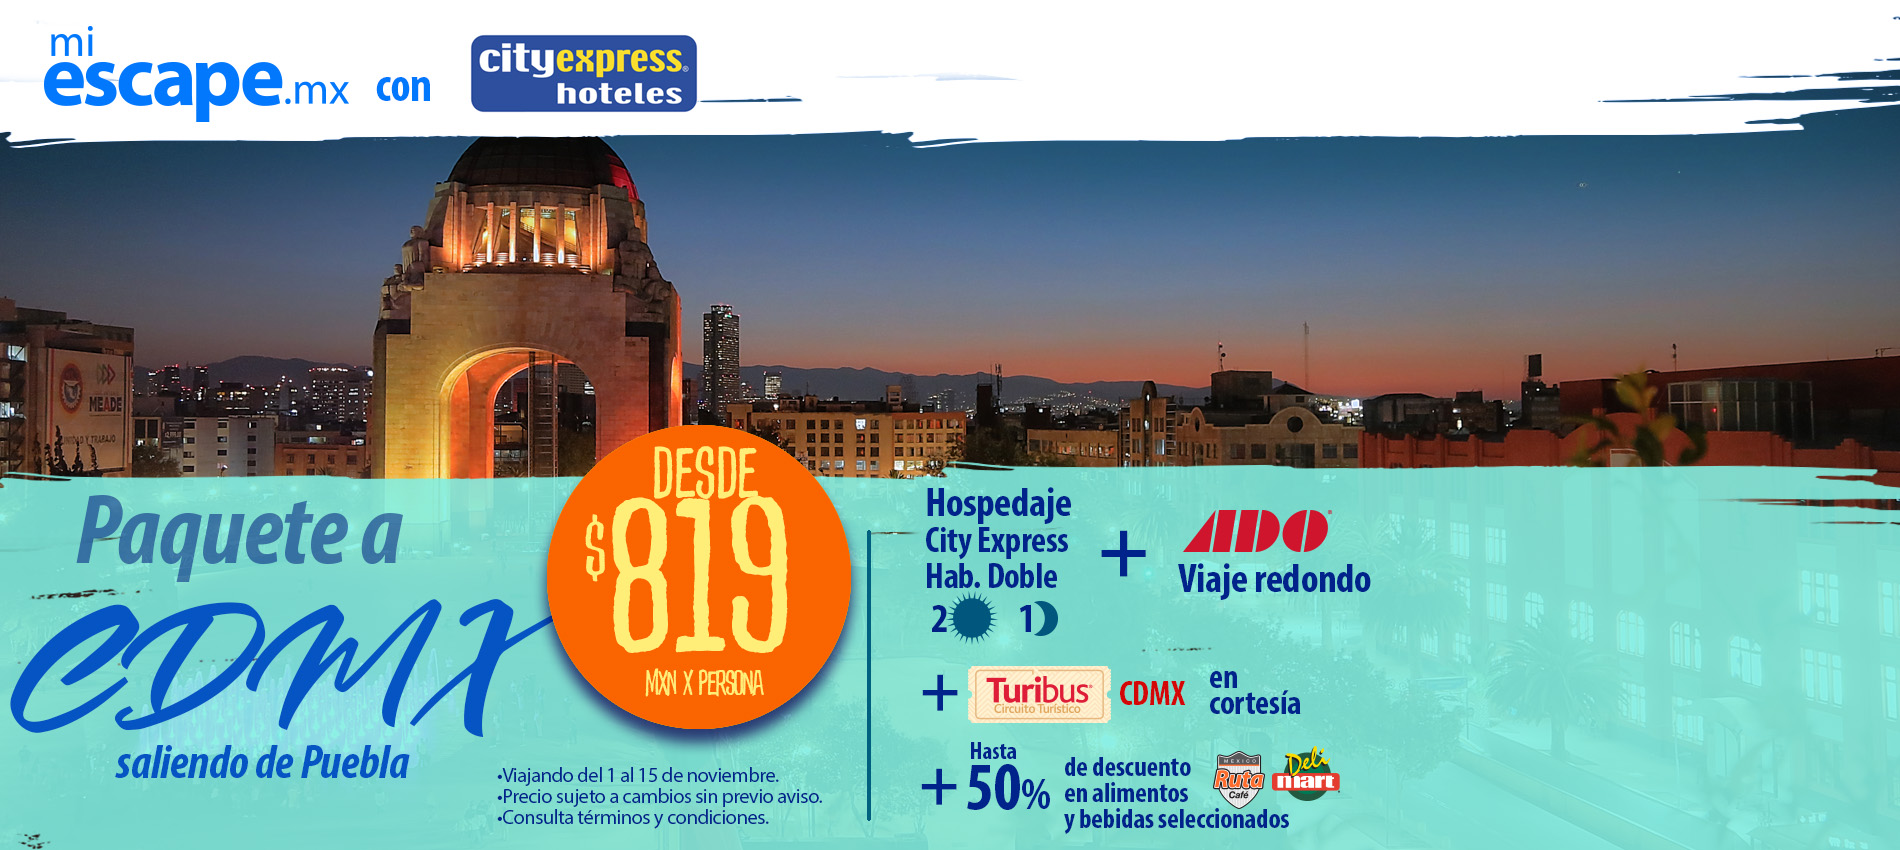 Paquete redondo (Autobús + Hotel) Puebla - Ciudad de México | Promoción Mi Escape con City Express